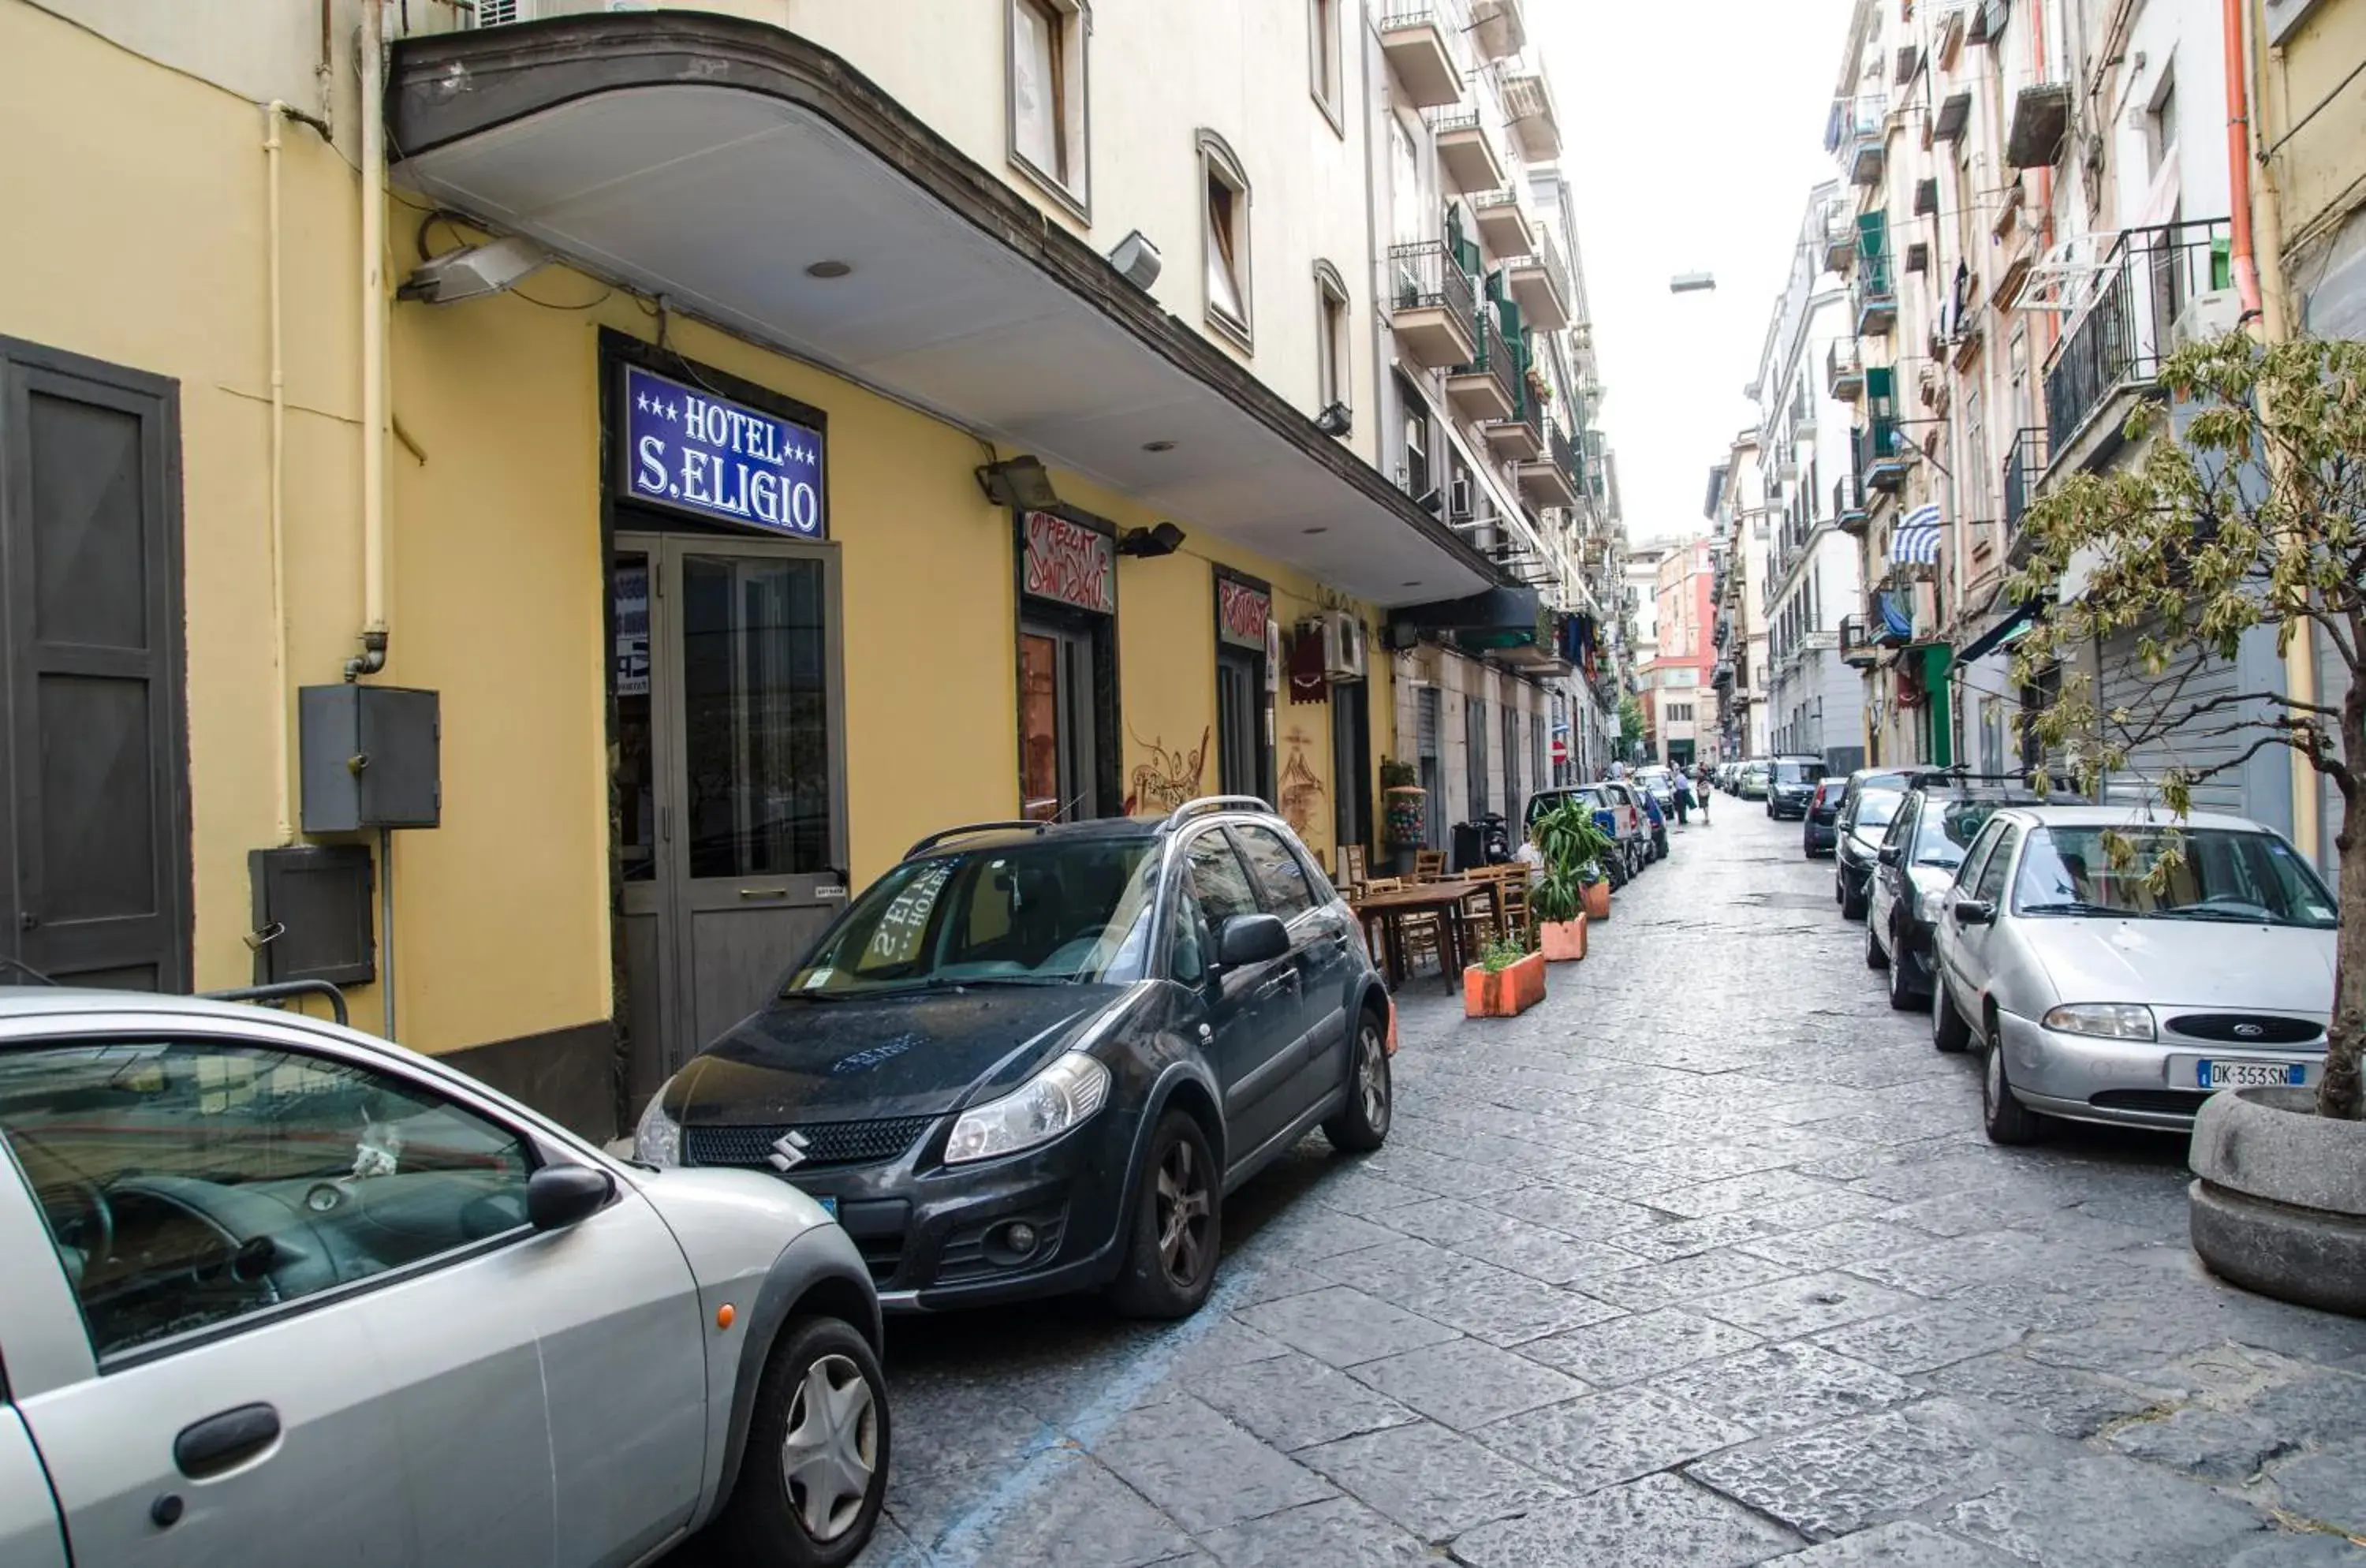 Facade/entrance in Hotel Sant'Eligio